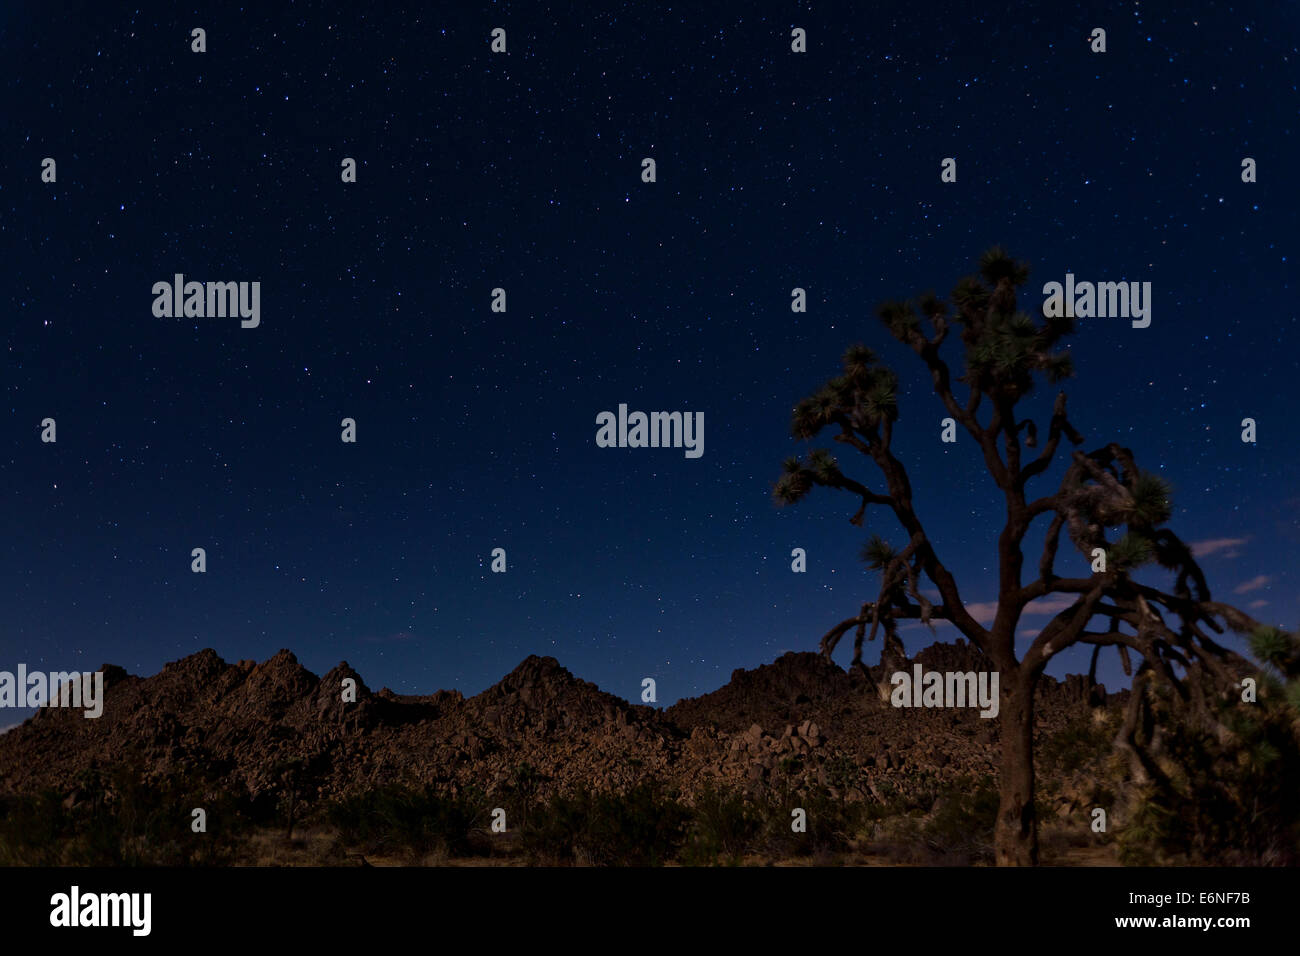 Starry night Joshua Tree landscape - Joshua Tree National Park, California USA Stock Photo